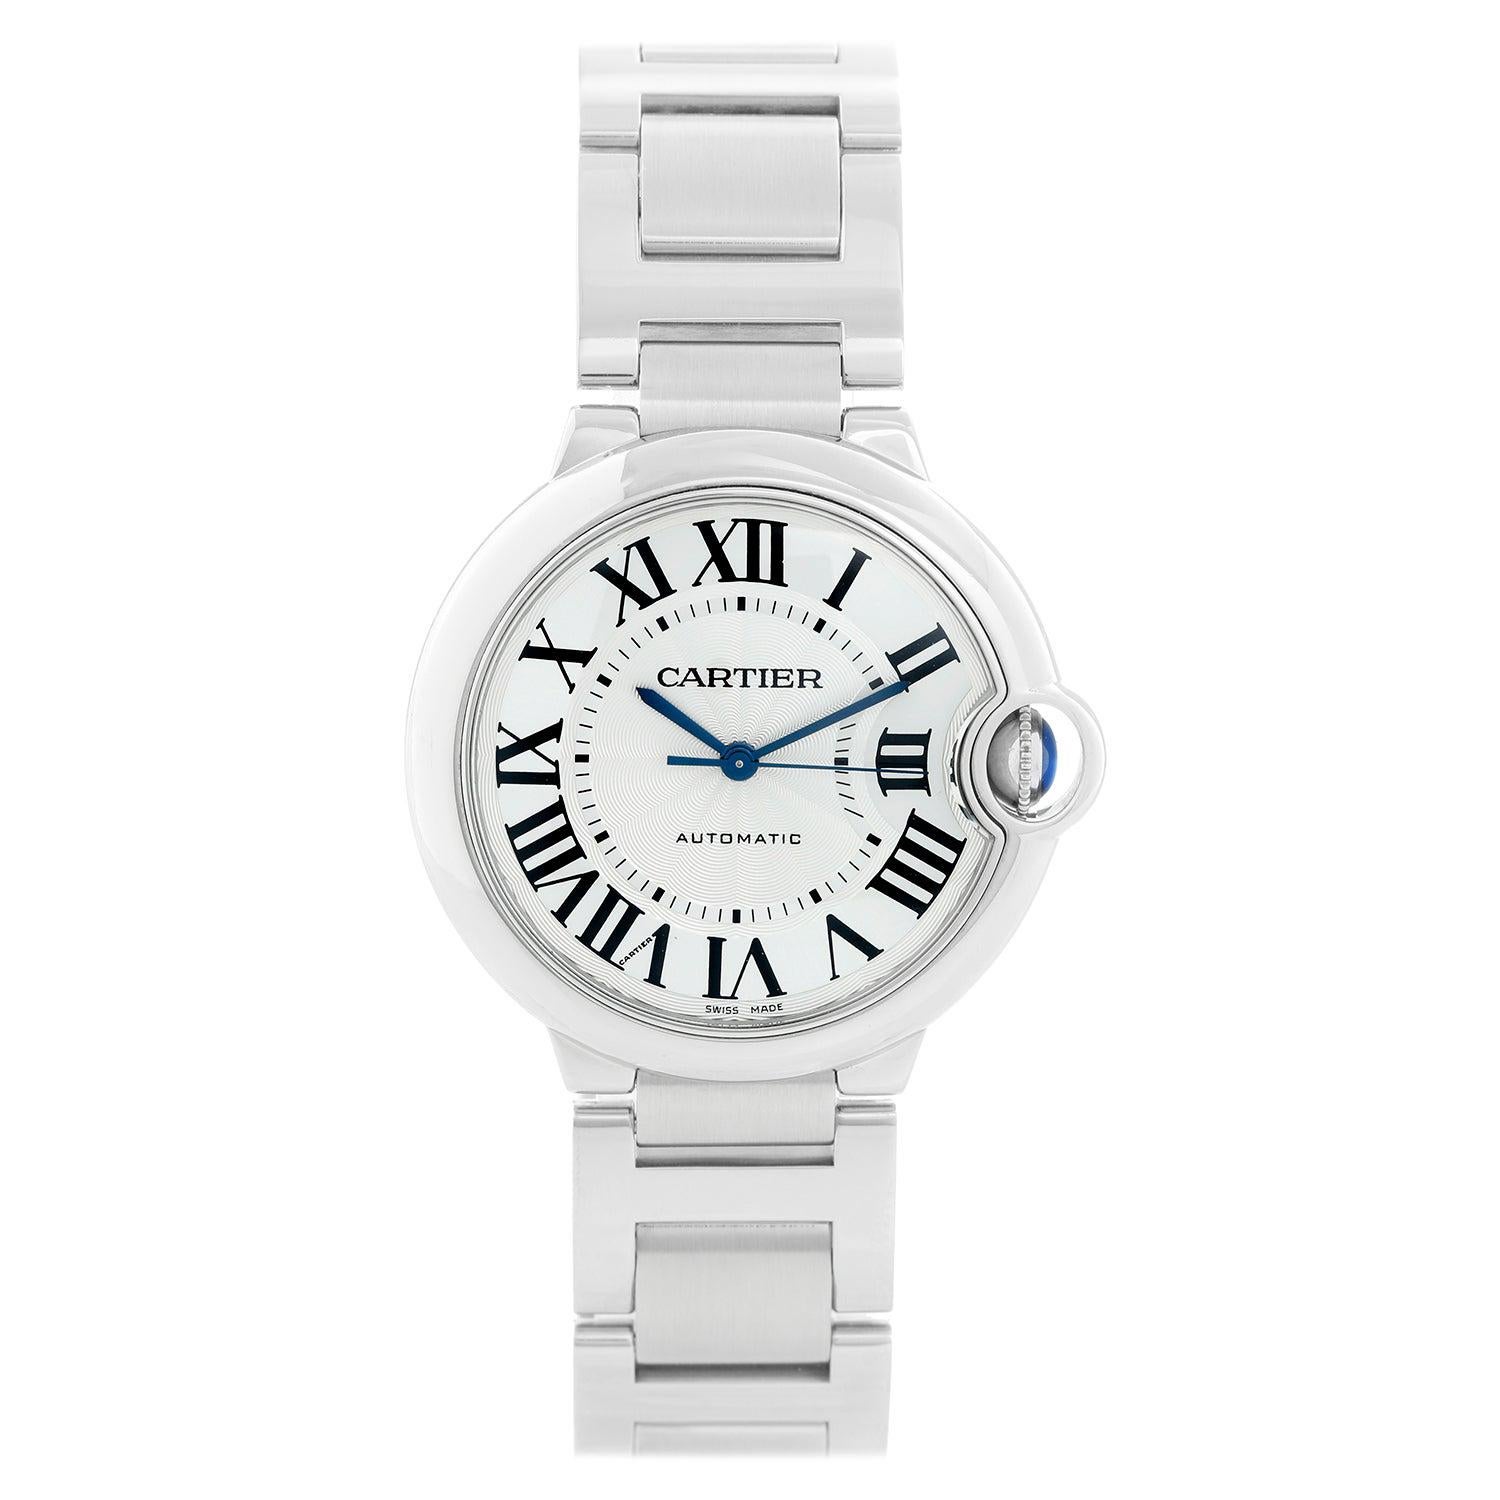 Cartier Ballon Bleu Midsize Stainless Steel Watch W6920046 3284